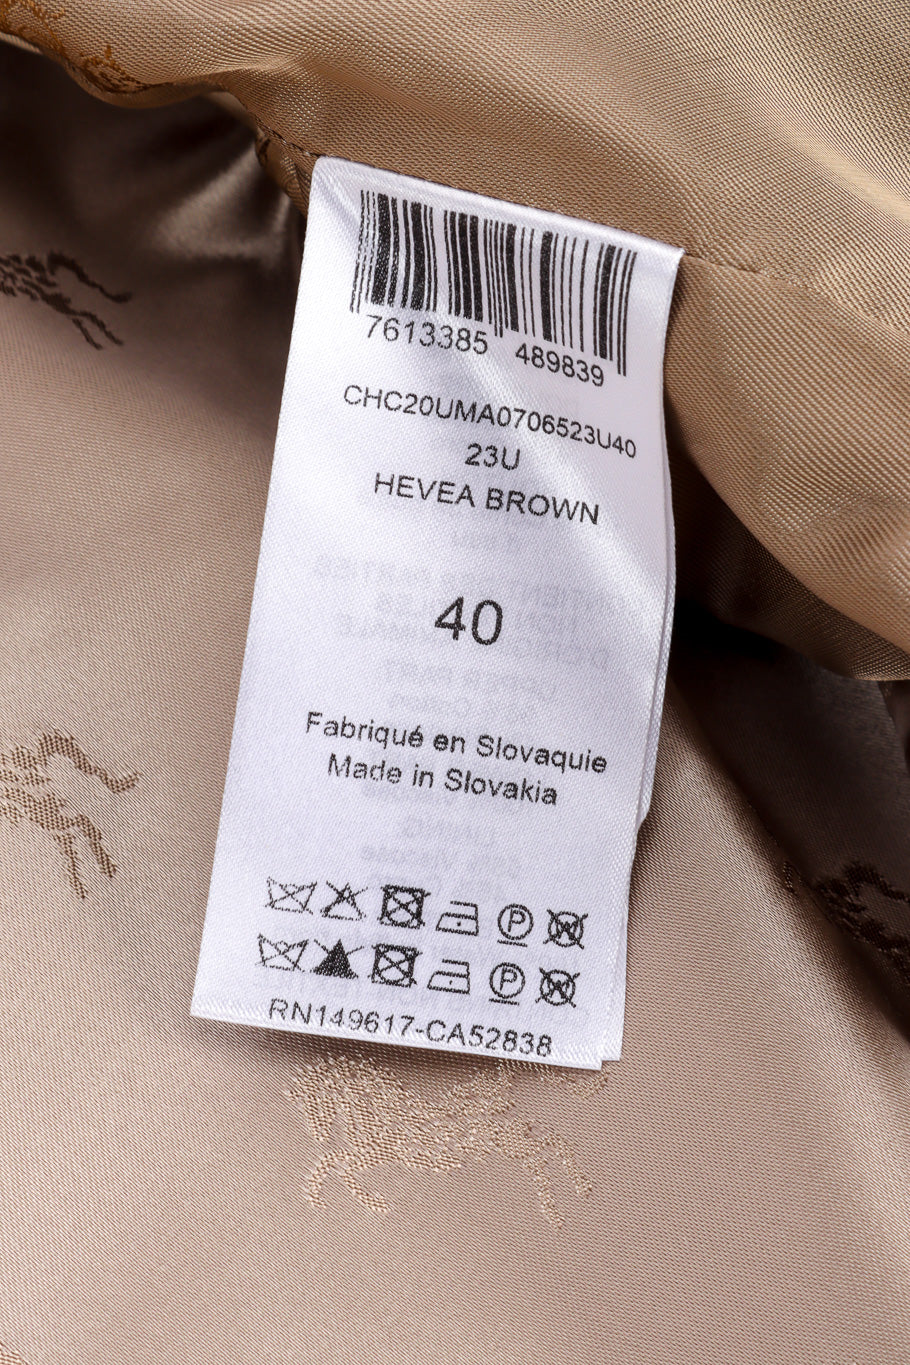 Chloé Equin Print Plaid Trench Coat size tag closeup @recessla